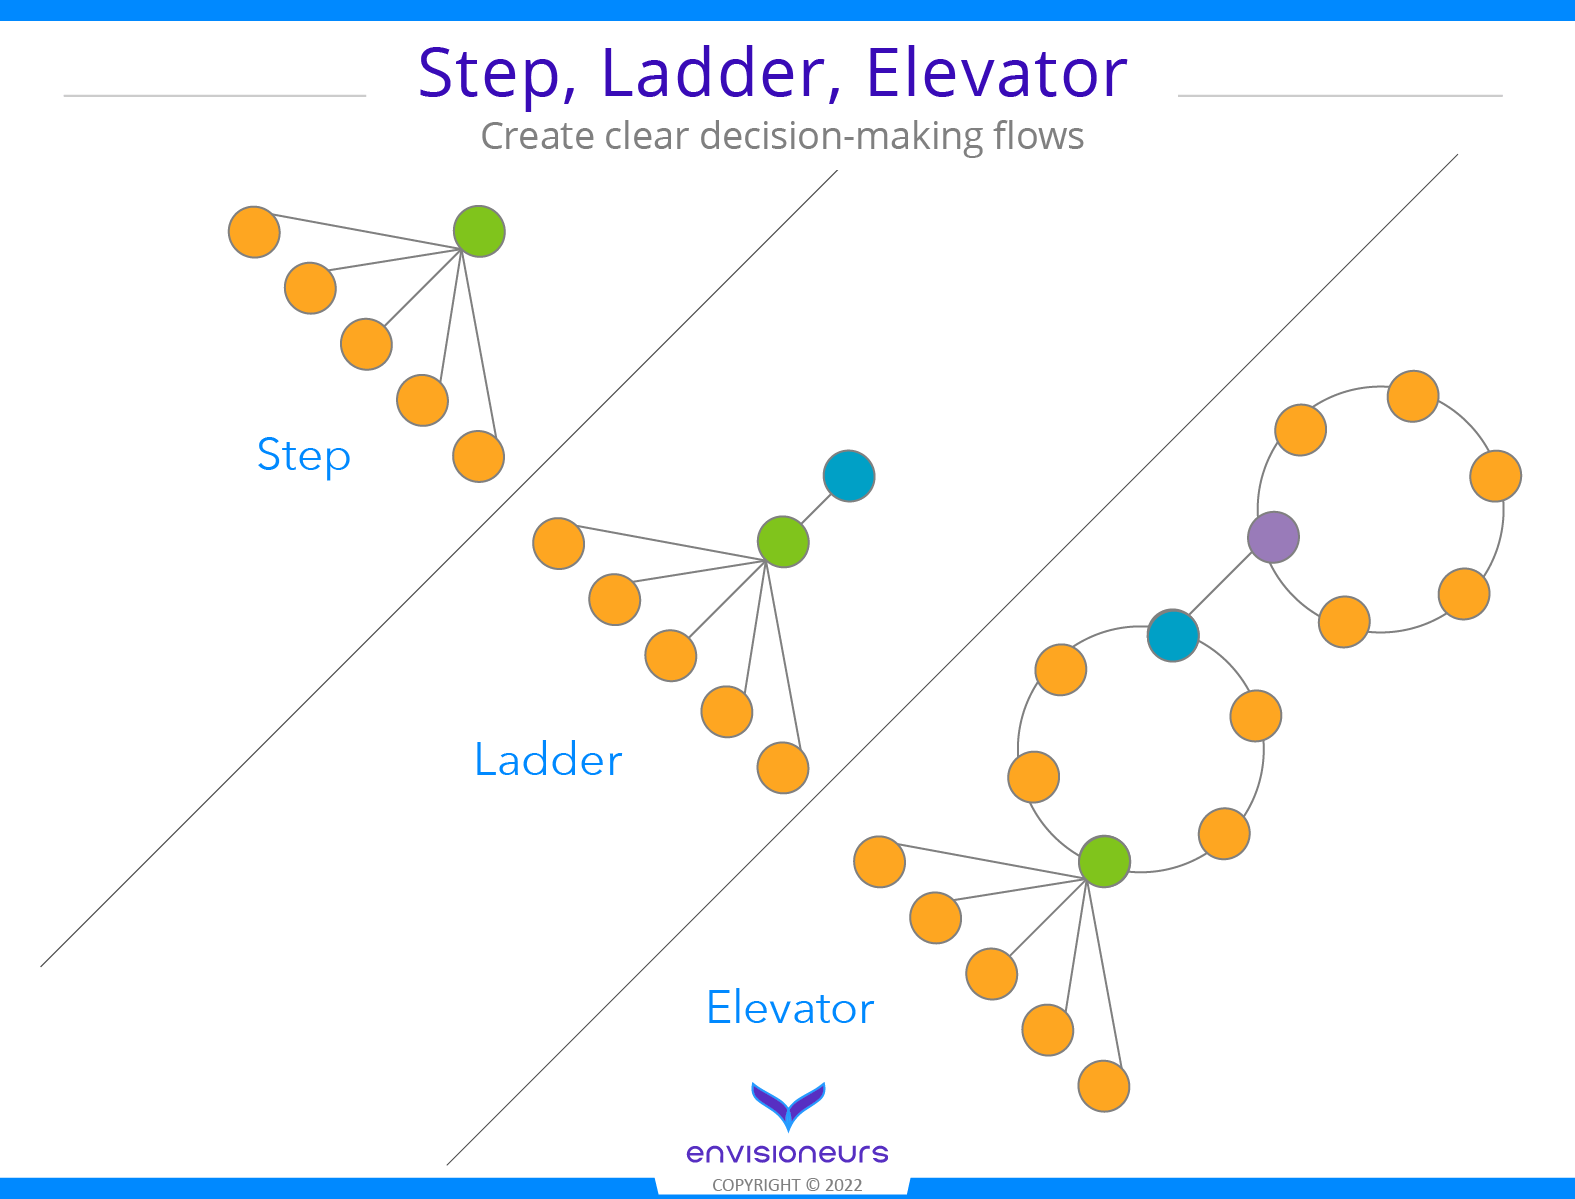 Step, Ladder, Elevator